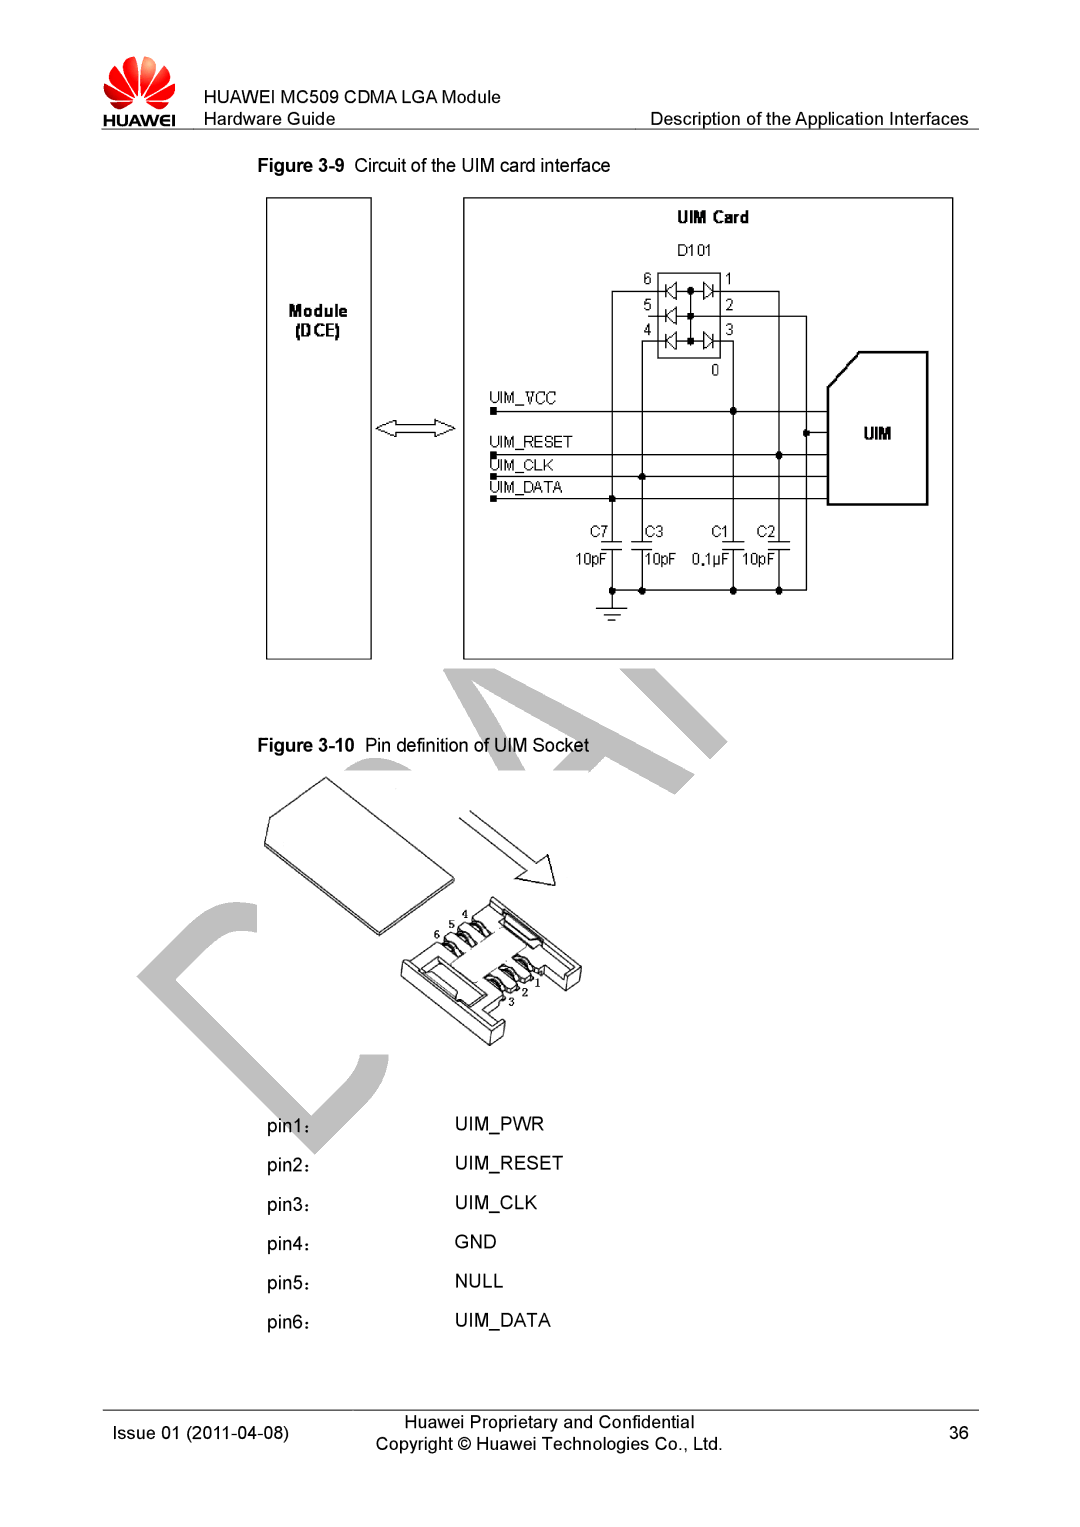 Huawei MC509 CDMA LGA manual Uimpwr, Null 